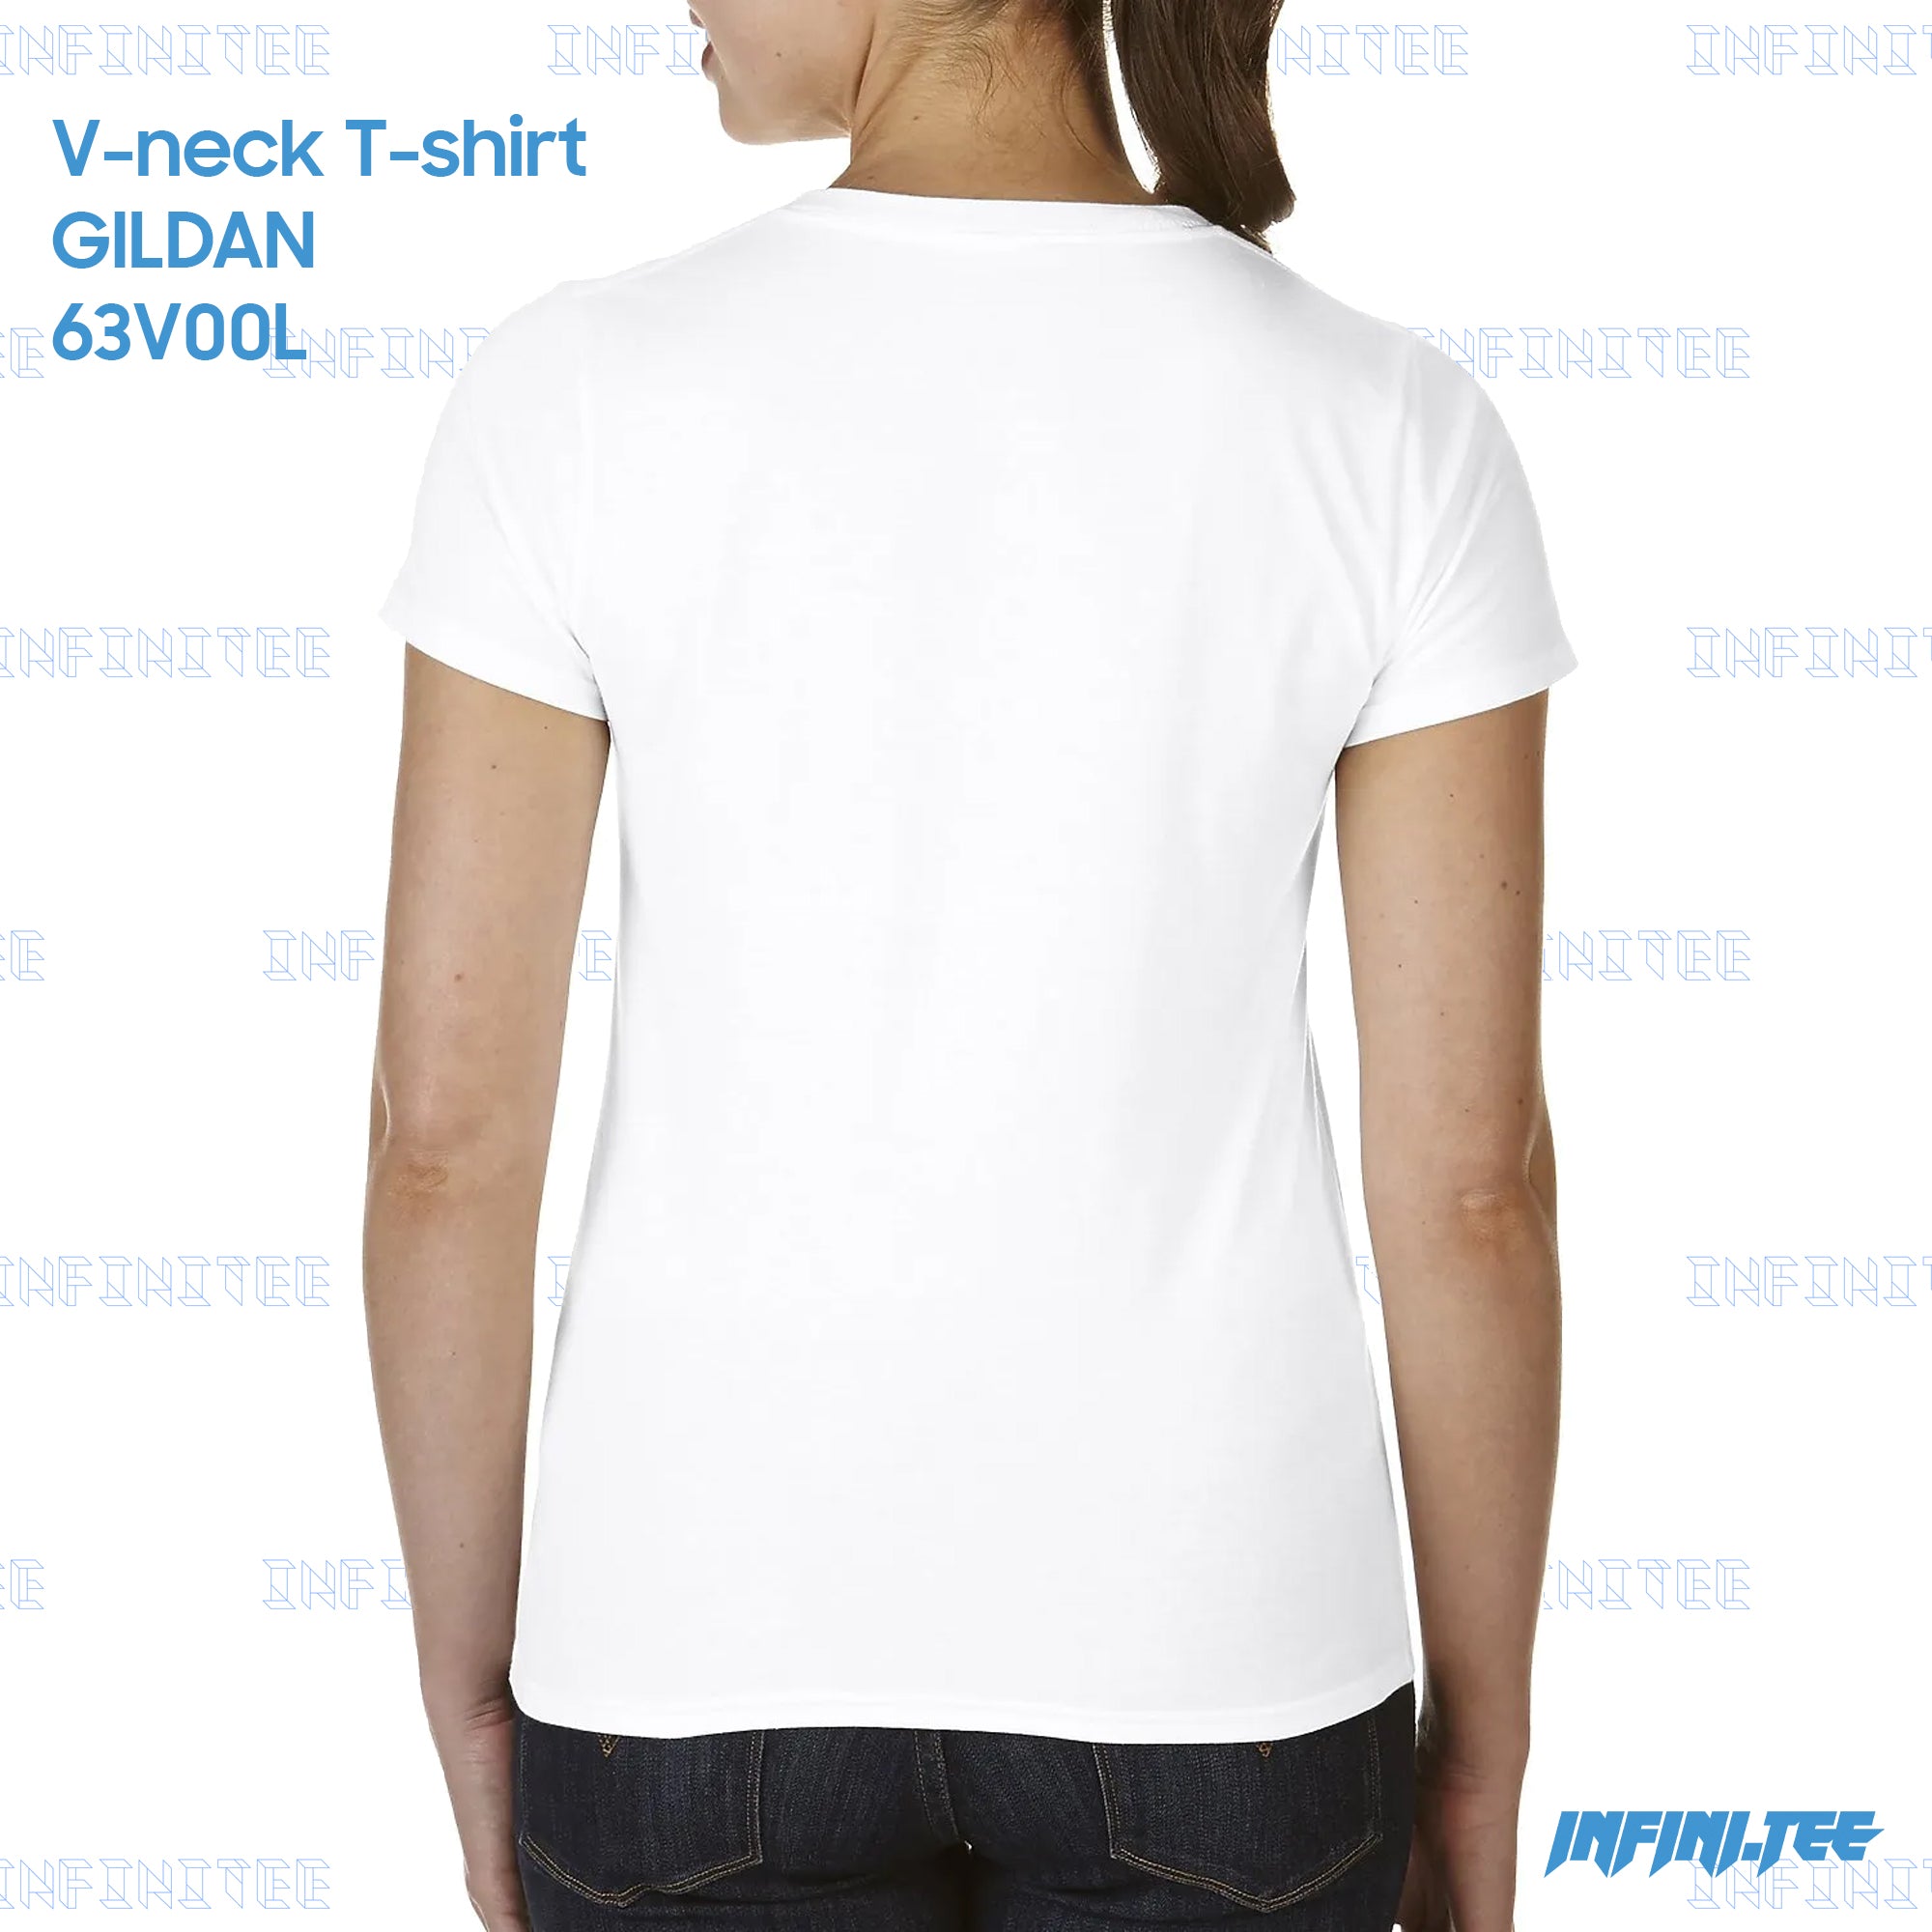 Ladies V-NECK T-shirt 63V00L GILDAN - WHITE